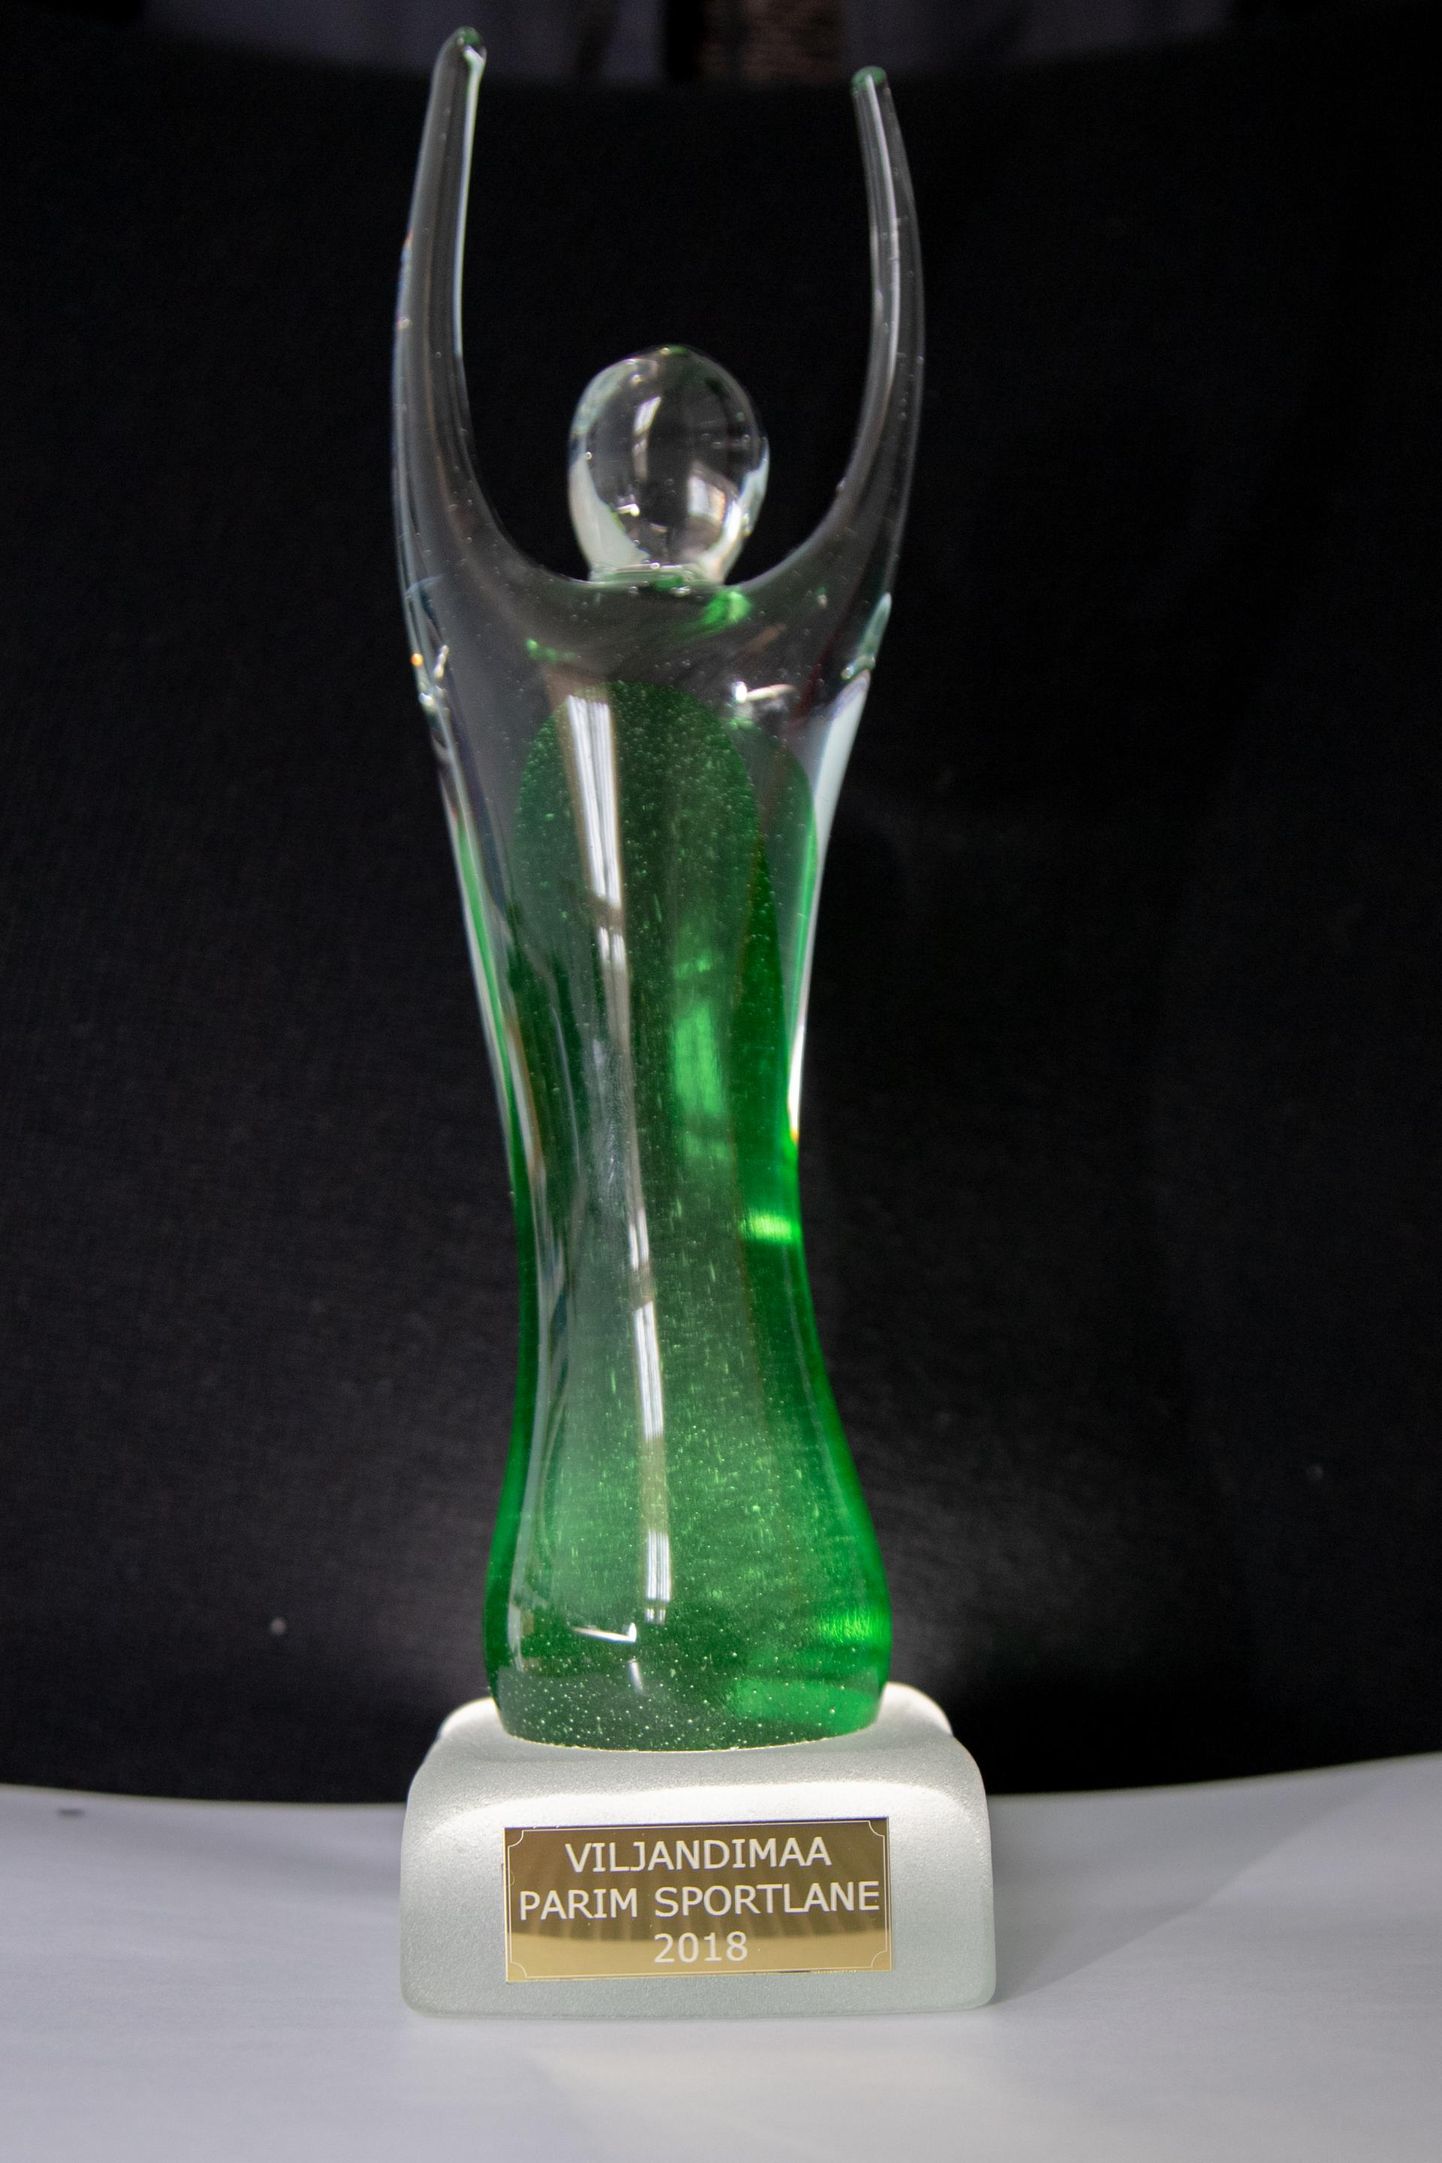 Selle klaasist karika, mis kannab nime Martin, saavad endale 24. jaanuaril Viljandimaa aasta sportlase tiitli võitjad.